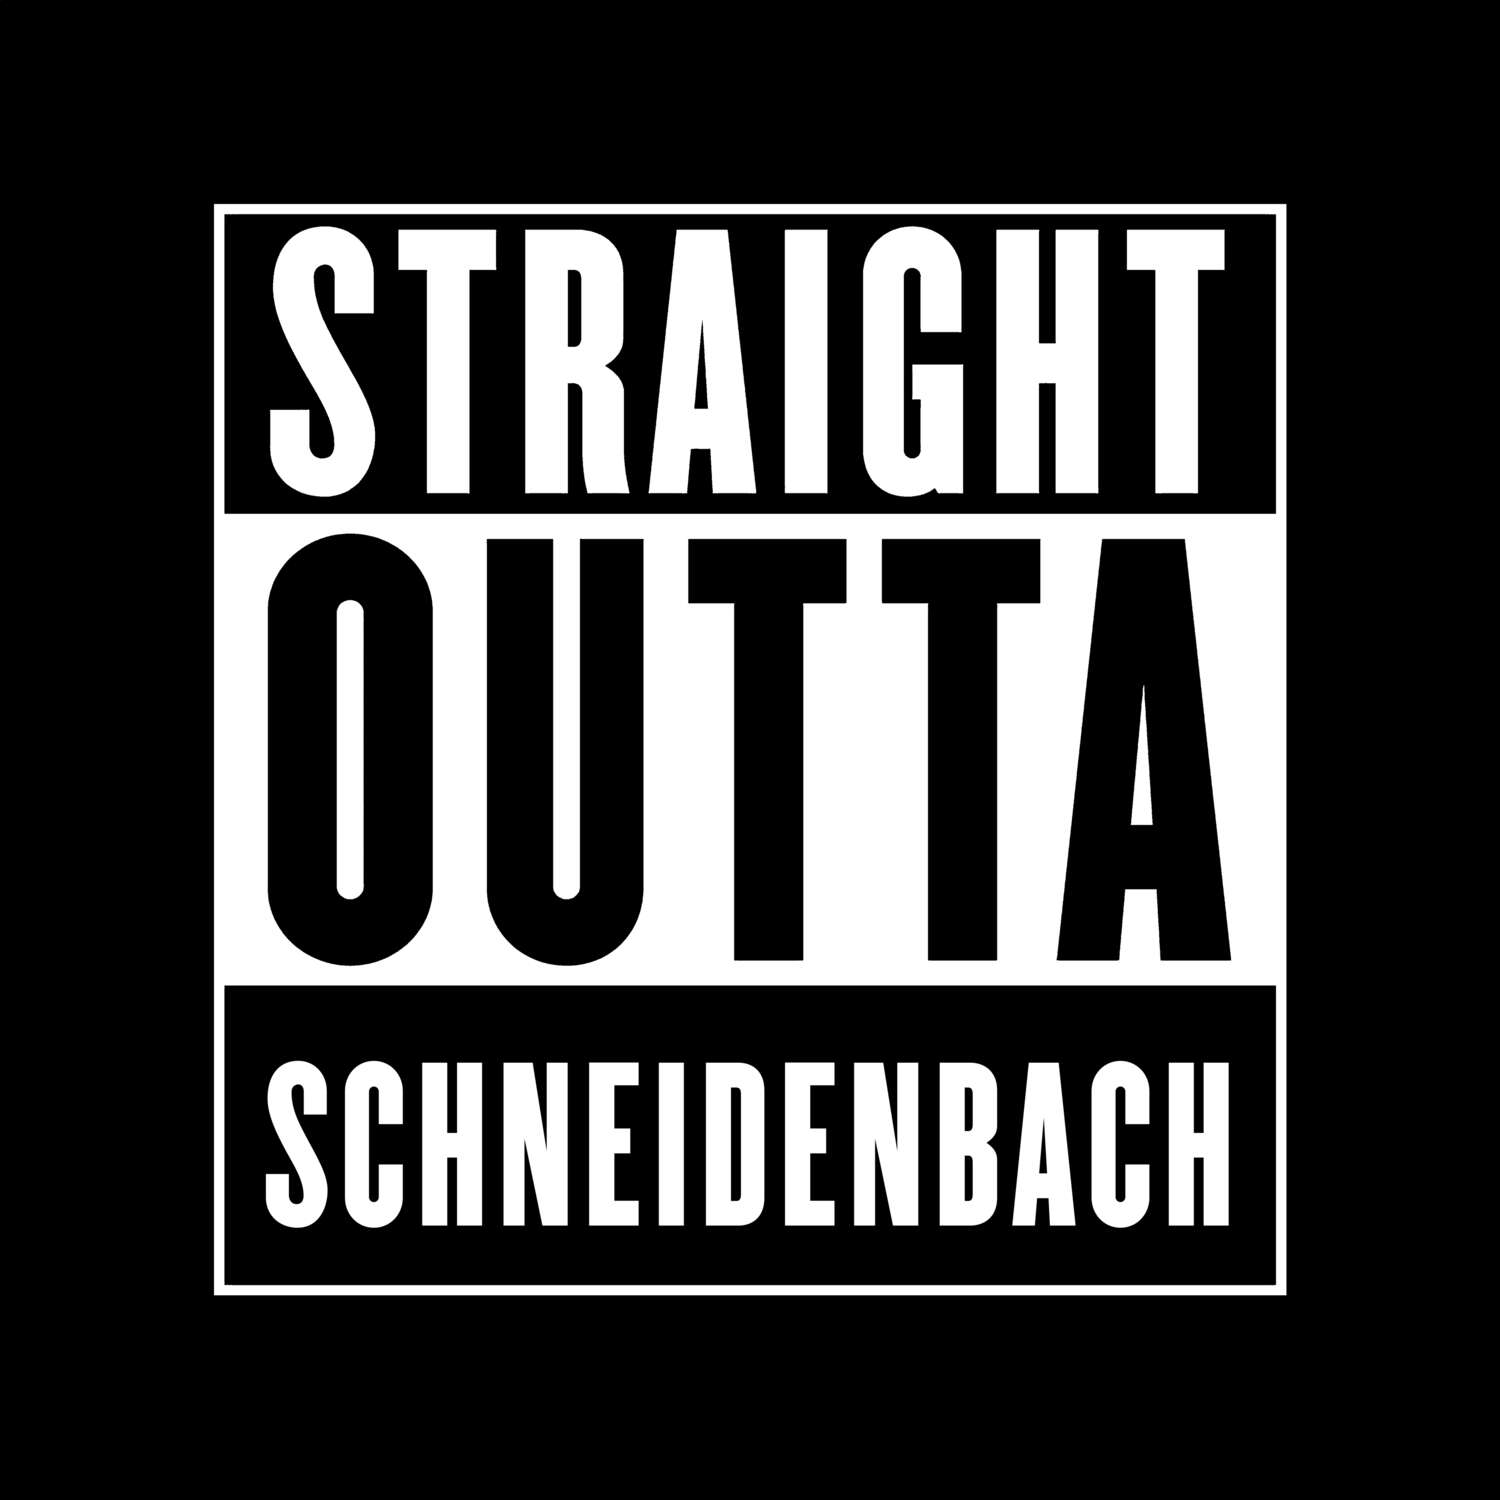 Schneidenbach T-Shirt »Straight Outta«